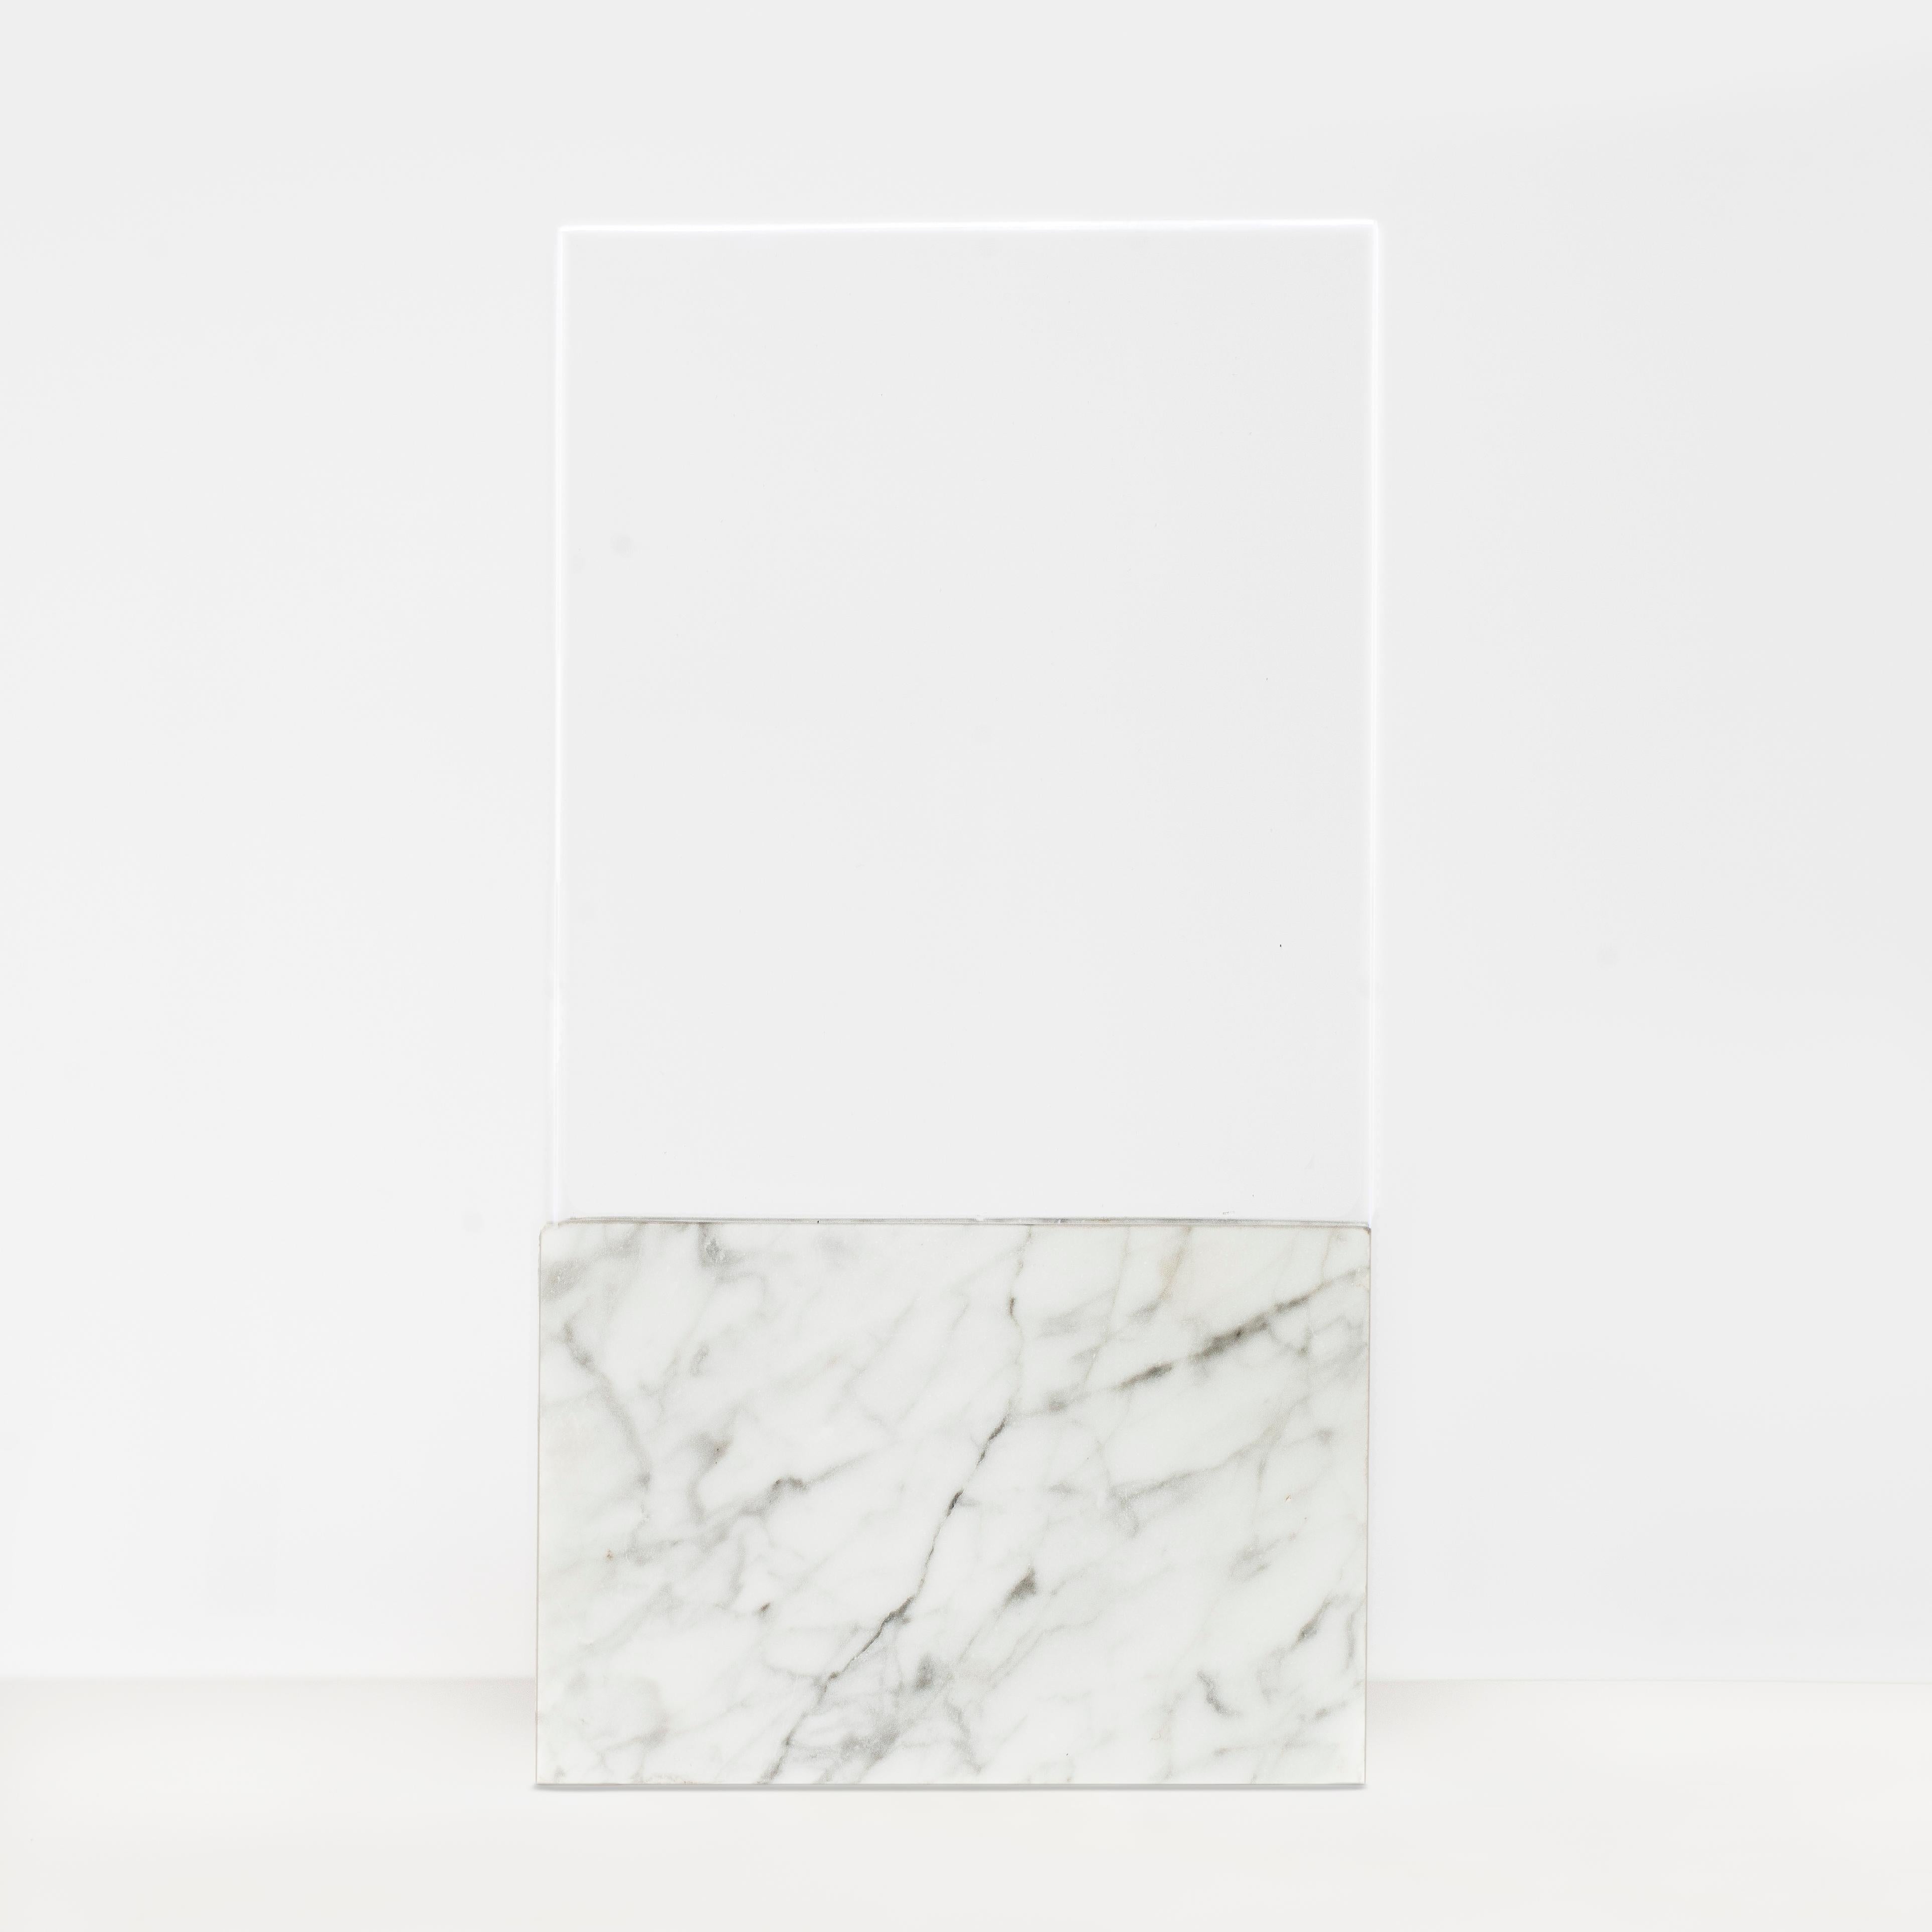 Tischleuchte aus schwarzem Horizon, Glas und Marmor von Carlos Aucejo
Abmessungen: 36 x 19 x 7 cm
MATERIALIEN: Glas und Marmor (es gibt sie in Marquina (schwarz) und Carrara (weiß)). 

In diesem Stück versuchen wir, durch die LED-Projektion auf ein